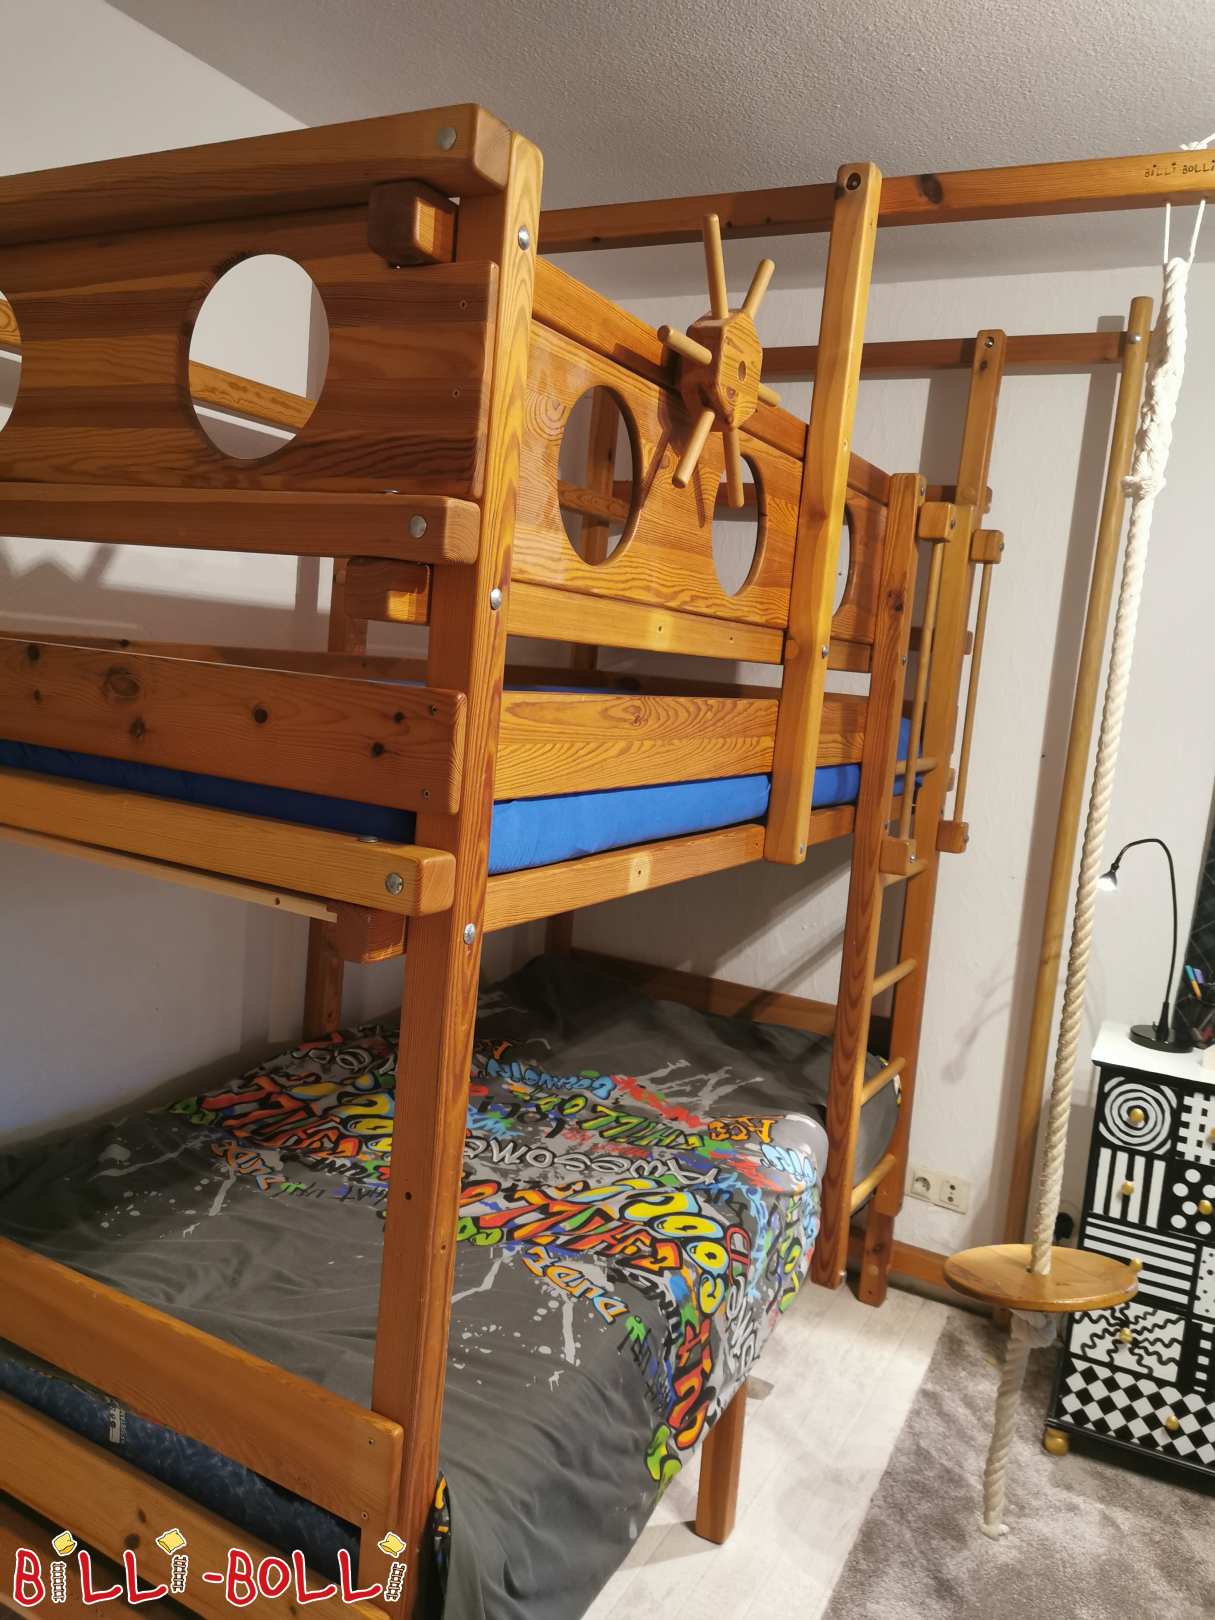 बंक बेड 90x200 सेमी पाइन तेल से सना हुआ-मोम, समुद्री डाकू सामान के साथ (श्रेणी: चारपाई बिस्तर का इस्तेमाल किया)